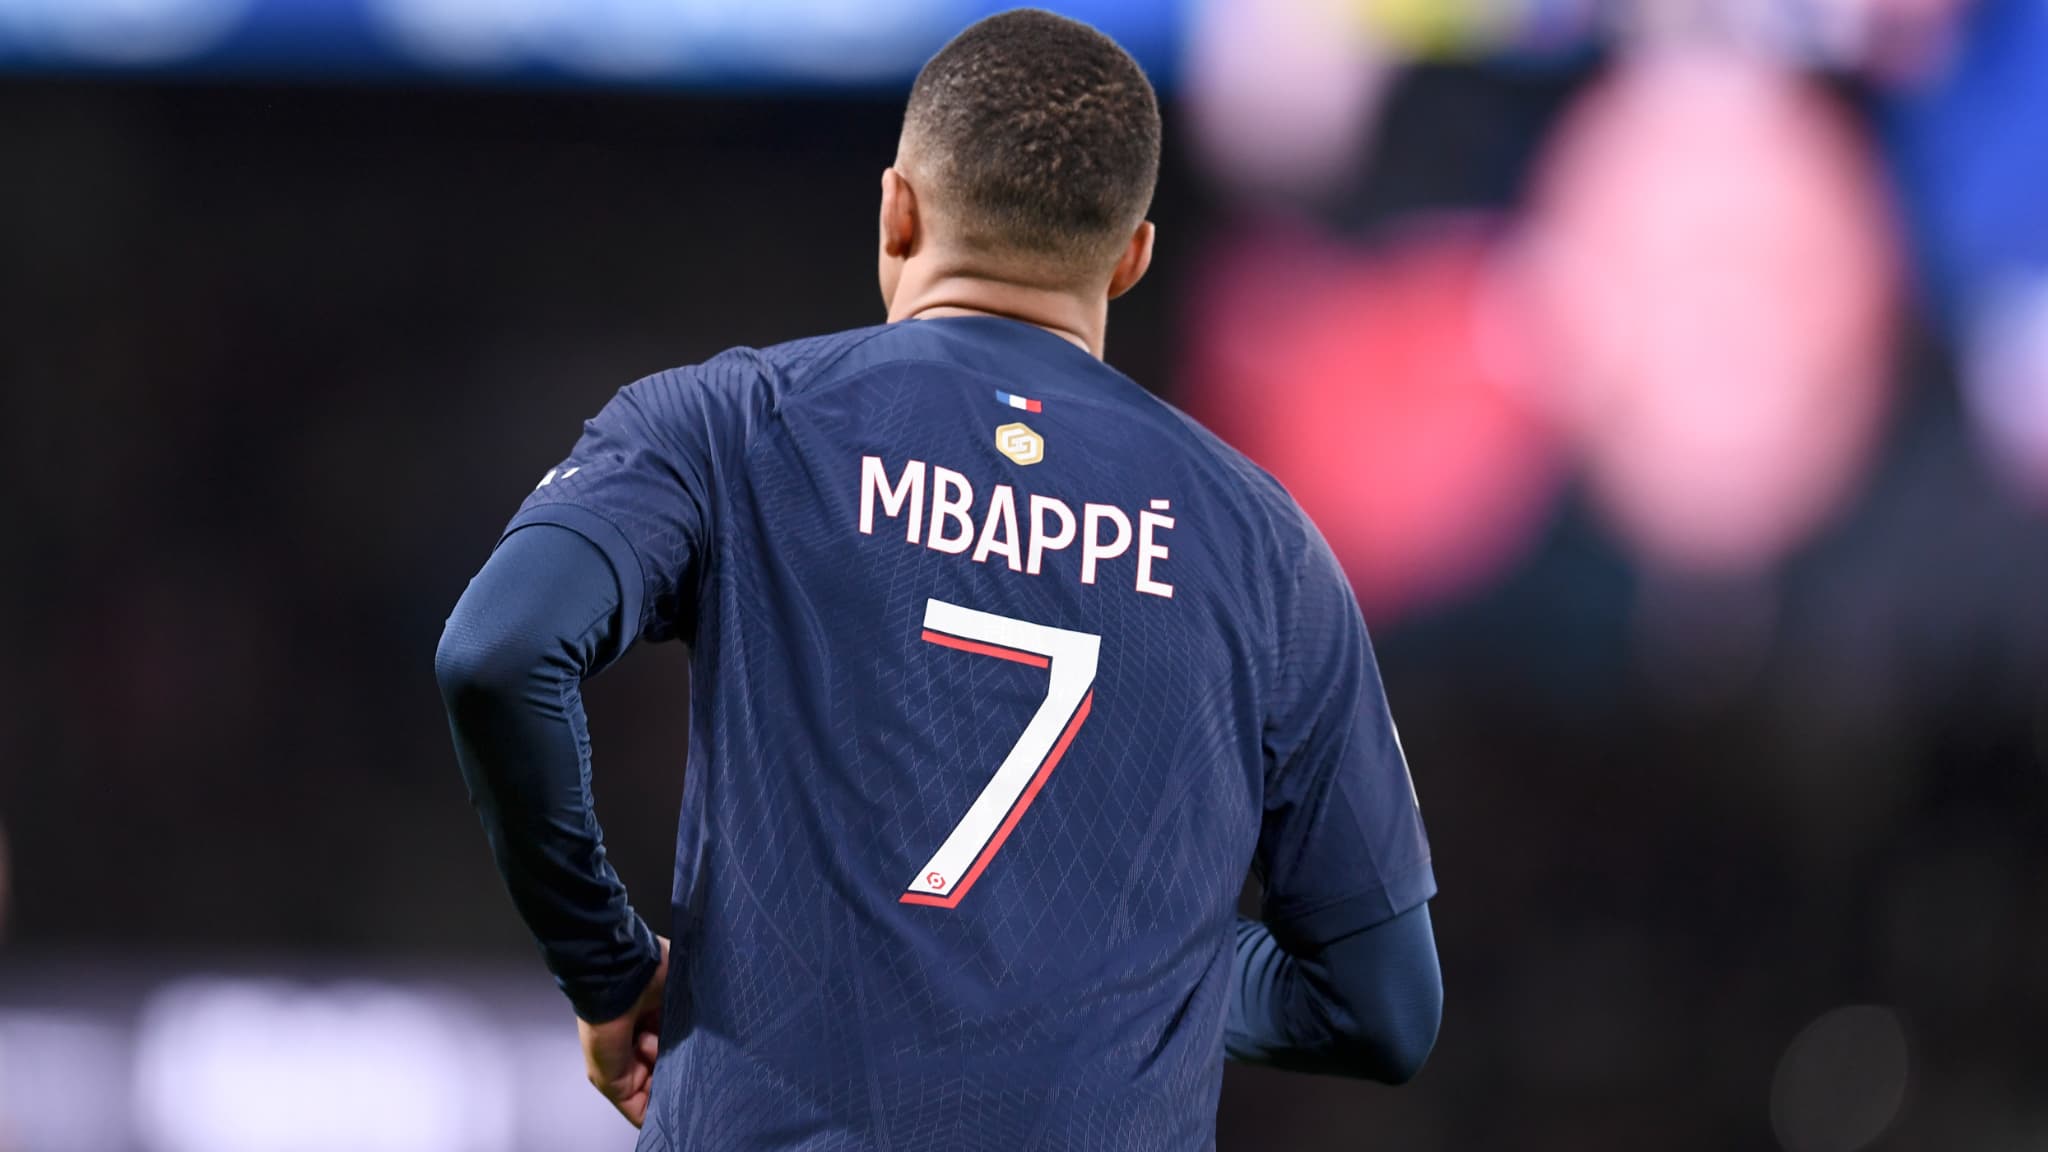 Il Real Madrid vuole annunciare Mbappé “ad aprile e maggio, non prima”, secondo Fred Hermel